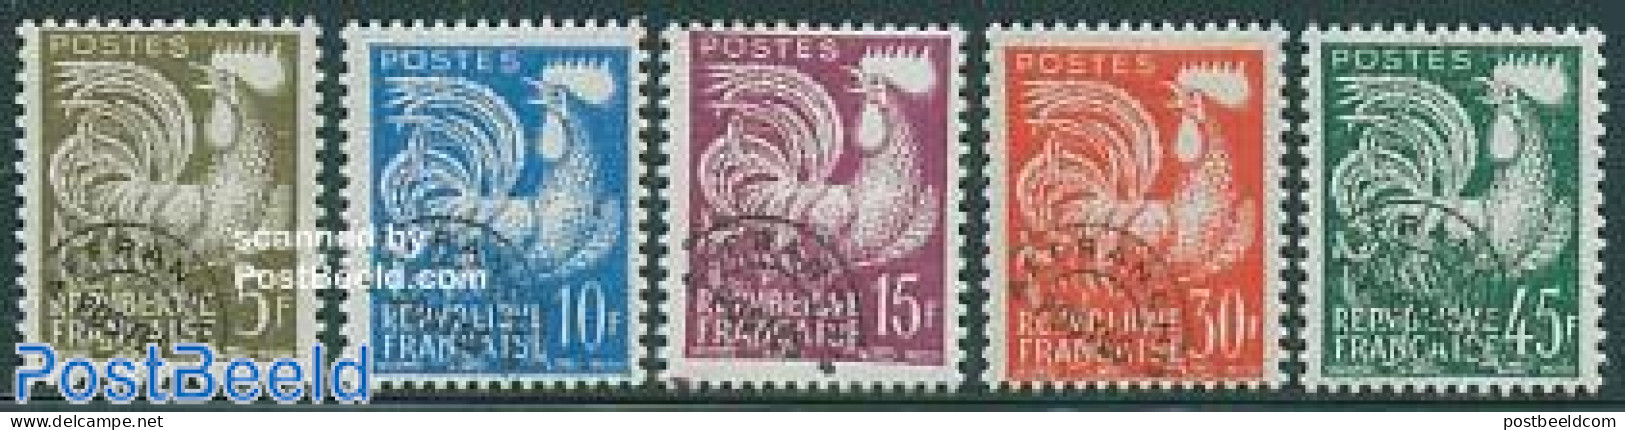 France 1957 Pre Cancels 5v, Mint NH, Nature - Poultry - Ongebruikt